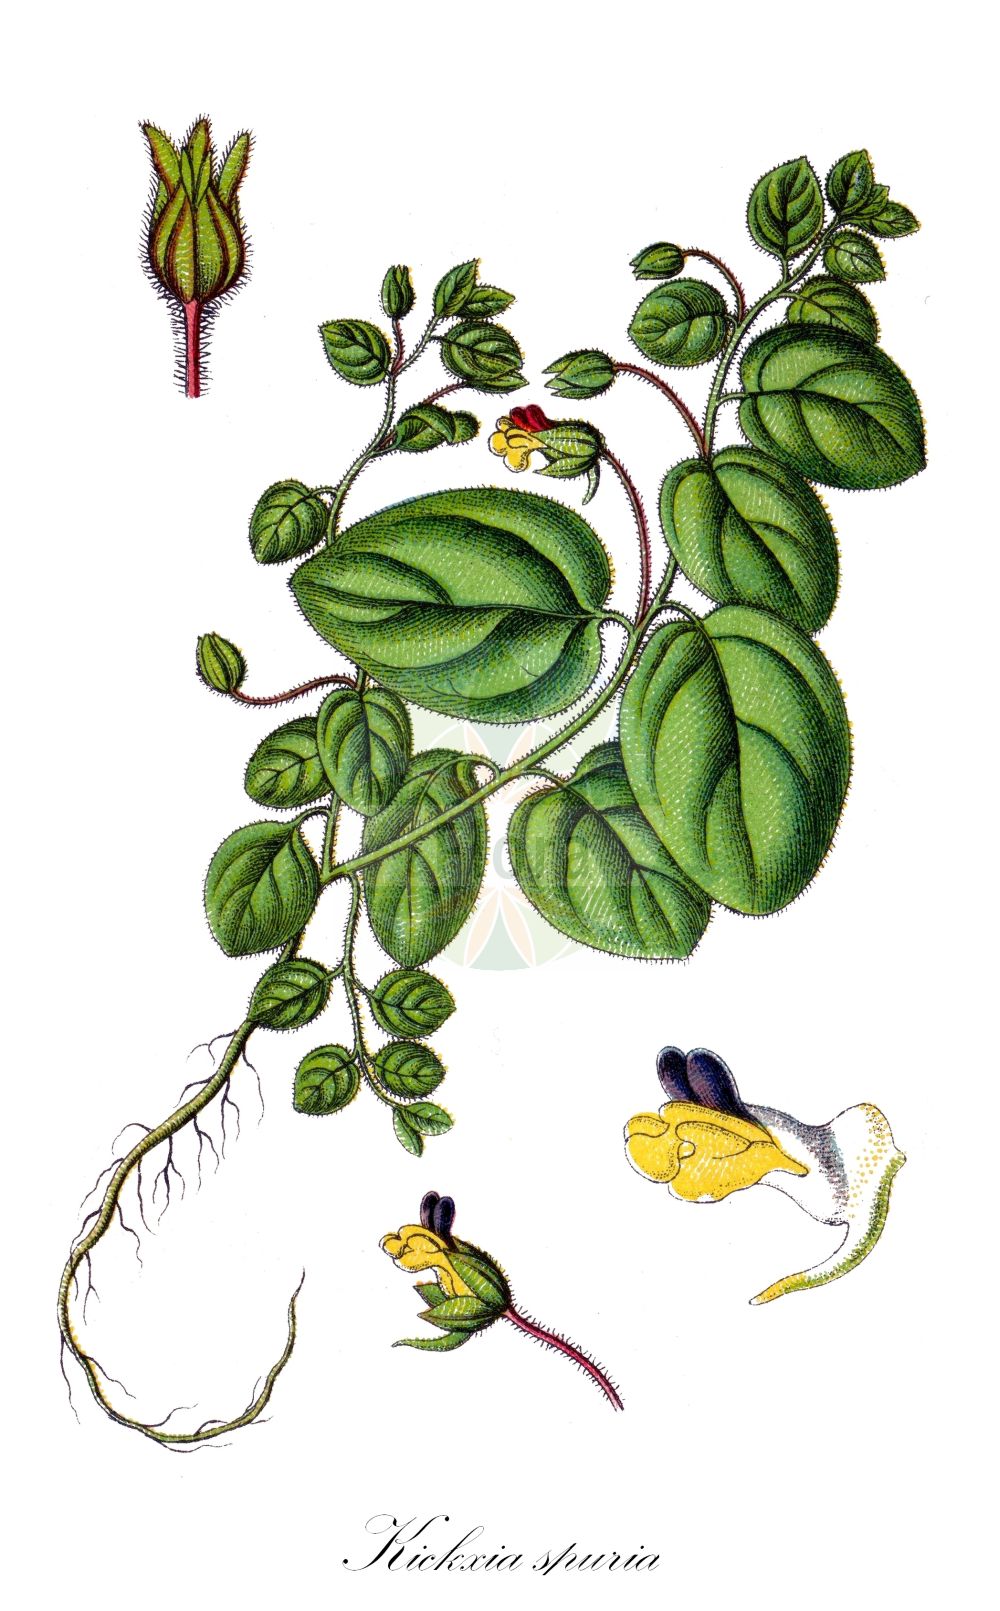 Historische Abbildung von Kickxia spuria (Eiblättriges Tännelkraut - Round-leaved Fluellen). Das Bild zeigt Blatt, Bluete, Frucht und Same. ---- Historical Drawing of Kickxia spuria (Eiblättriges Tännelkraut - Round-leaved Fluellen). The image is showing leaf, flower, fruit and seed.(Kickxia spuria,Eiblättriges Tännelkraut,Round-leaved Fluellen,Antirrhinum spurium,Elatinoides spuria,Linaria spuria,Linaria spuria (L.) Mill.,Kickxia spuria,Eiblaettriges Taennelkraut,Eiblaettriges Leinkraut,Unechtes Schlangenmaul,Round-leaved Fluellen,Female Fluvellin,Roundleaf Cancerwort,Leafless Bluebush,Kickxia,Tännelkraut,Cancerwort,Plantaginaceae,Wegerichgewächse,Plantain family,Blatt,Bluete,Frucht,Same,leaf,flower,fruit,seed,Sturm (1796f))